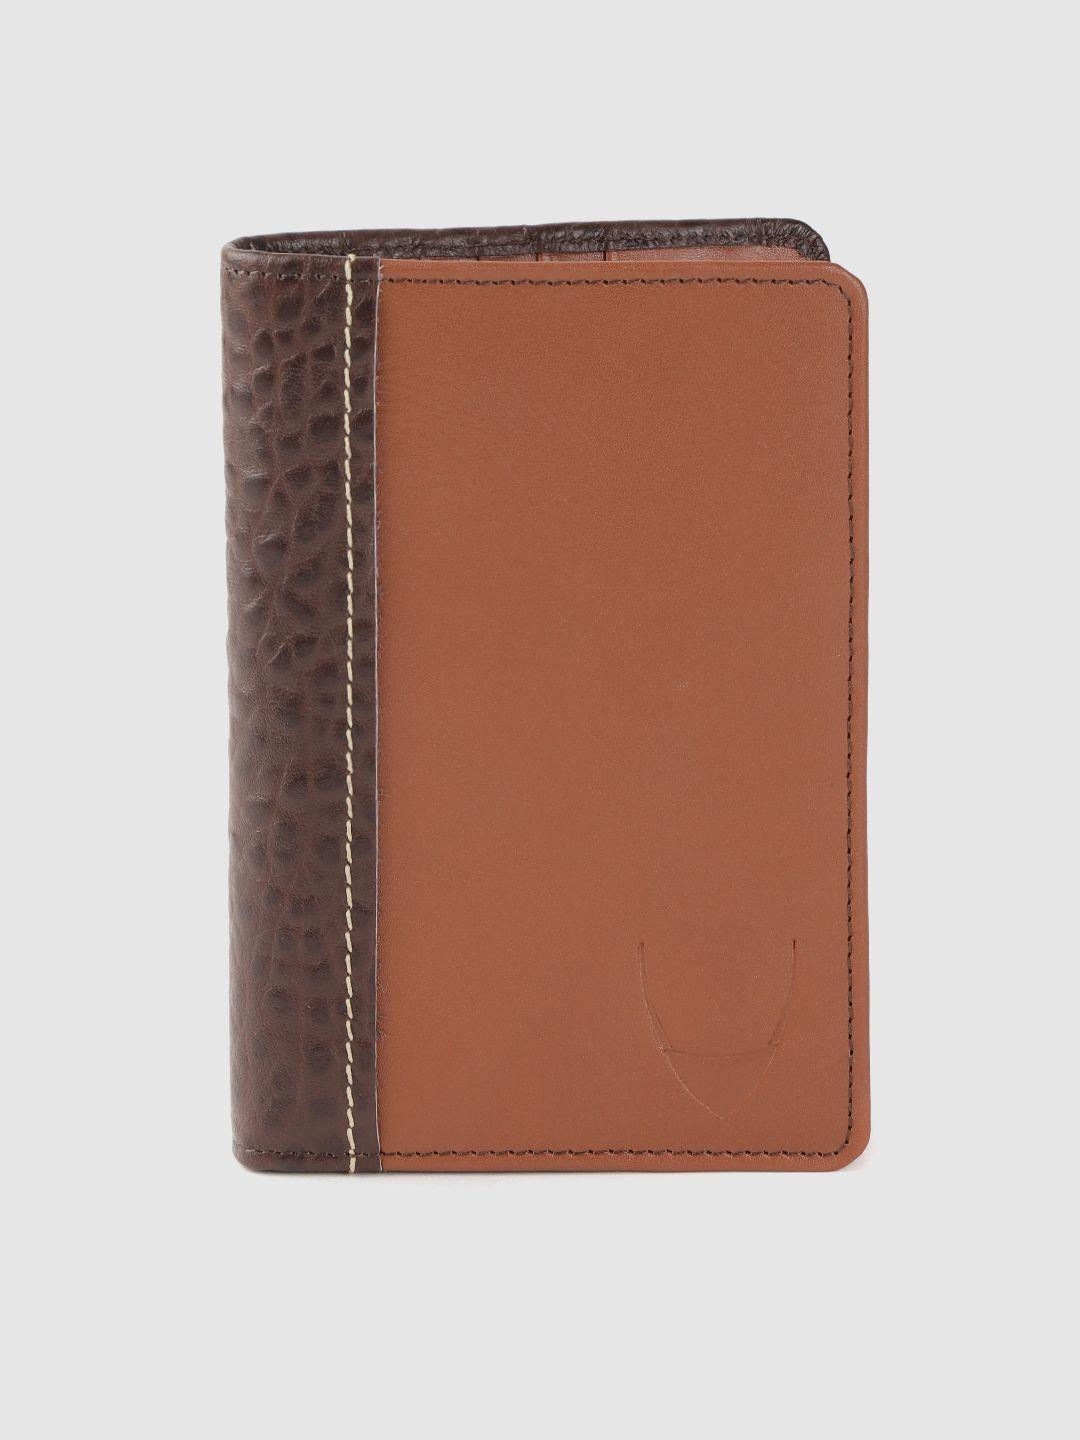 hidesign women brown croc textured leather passport holder